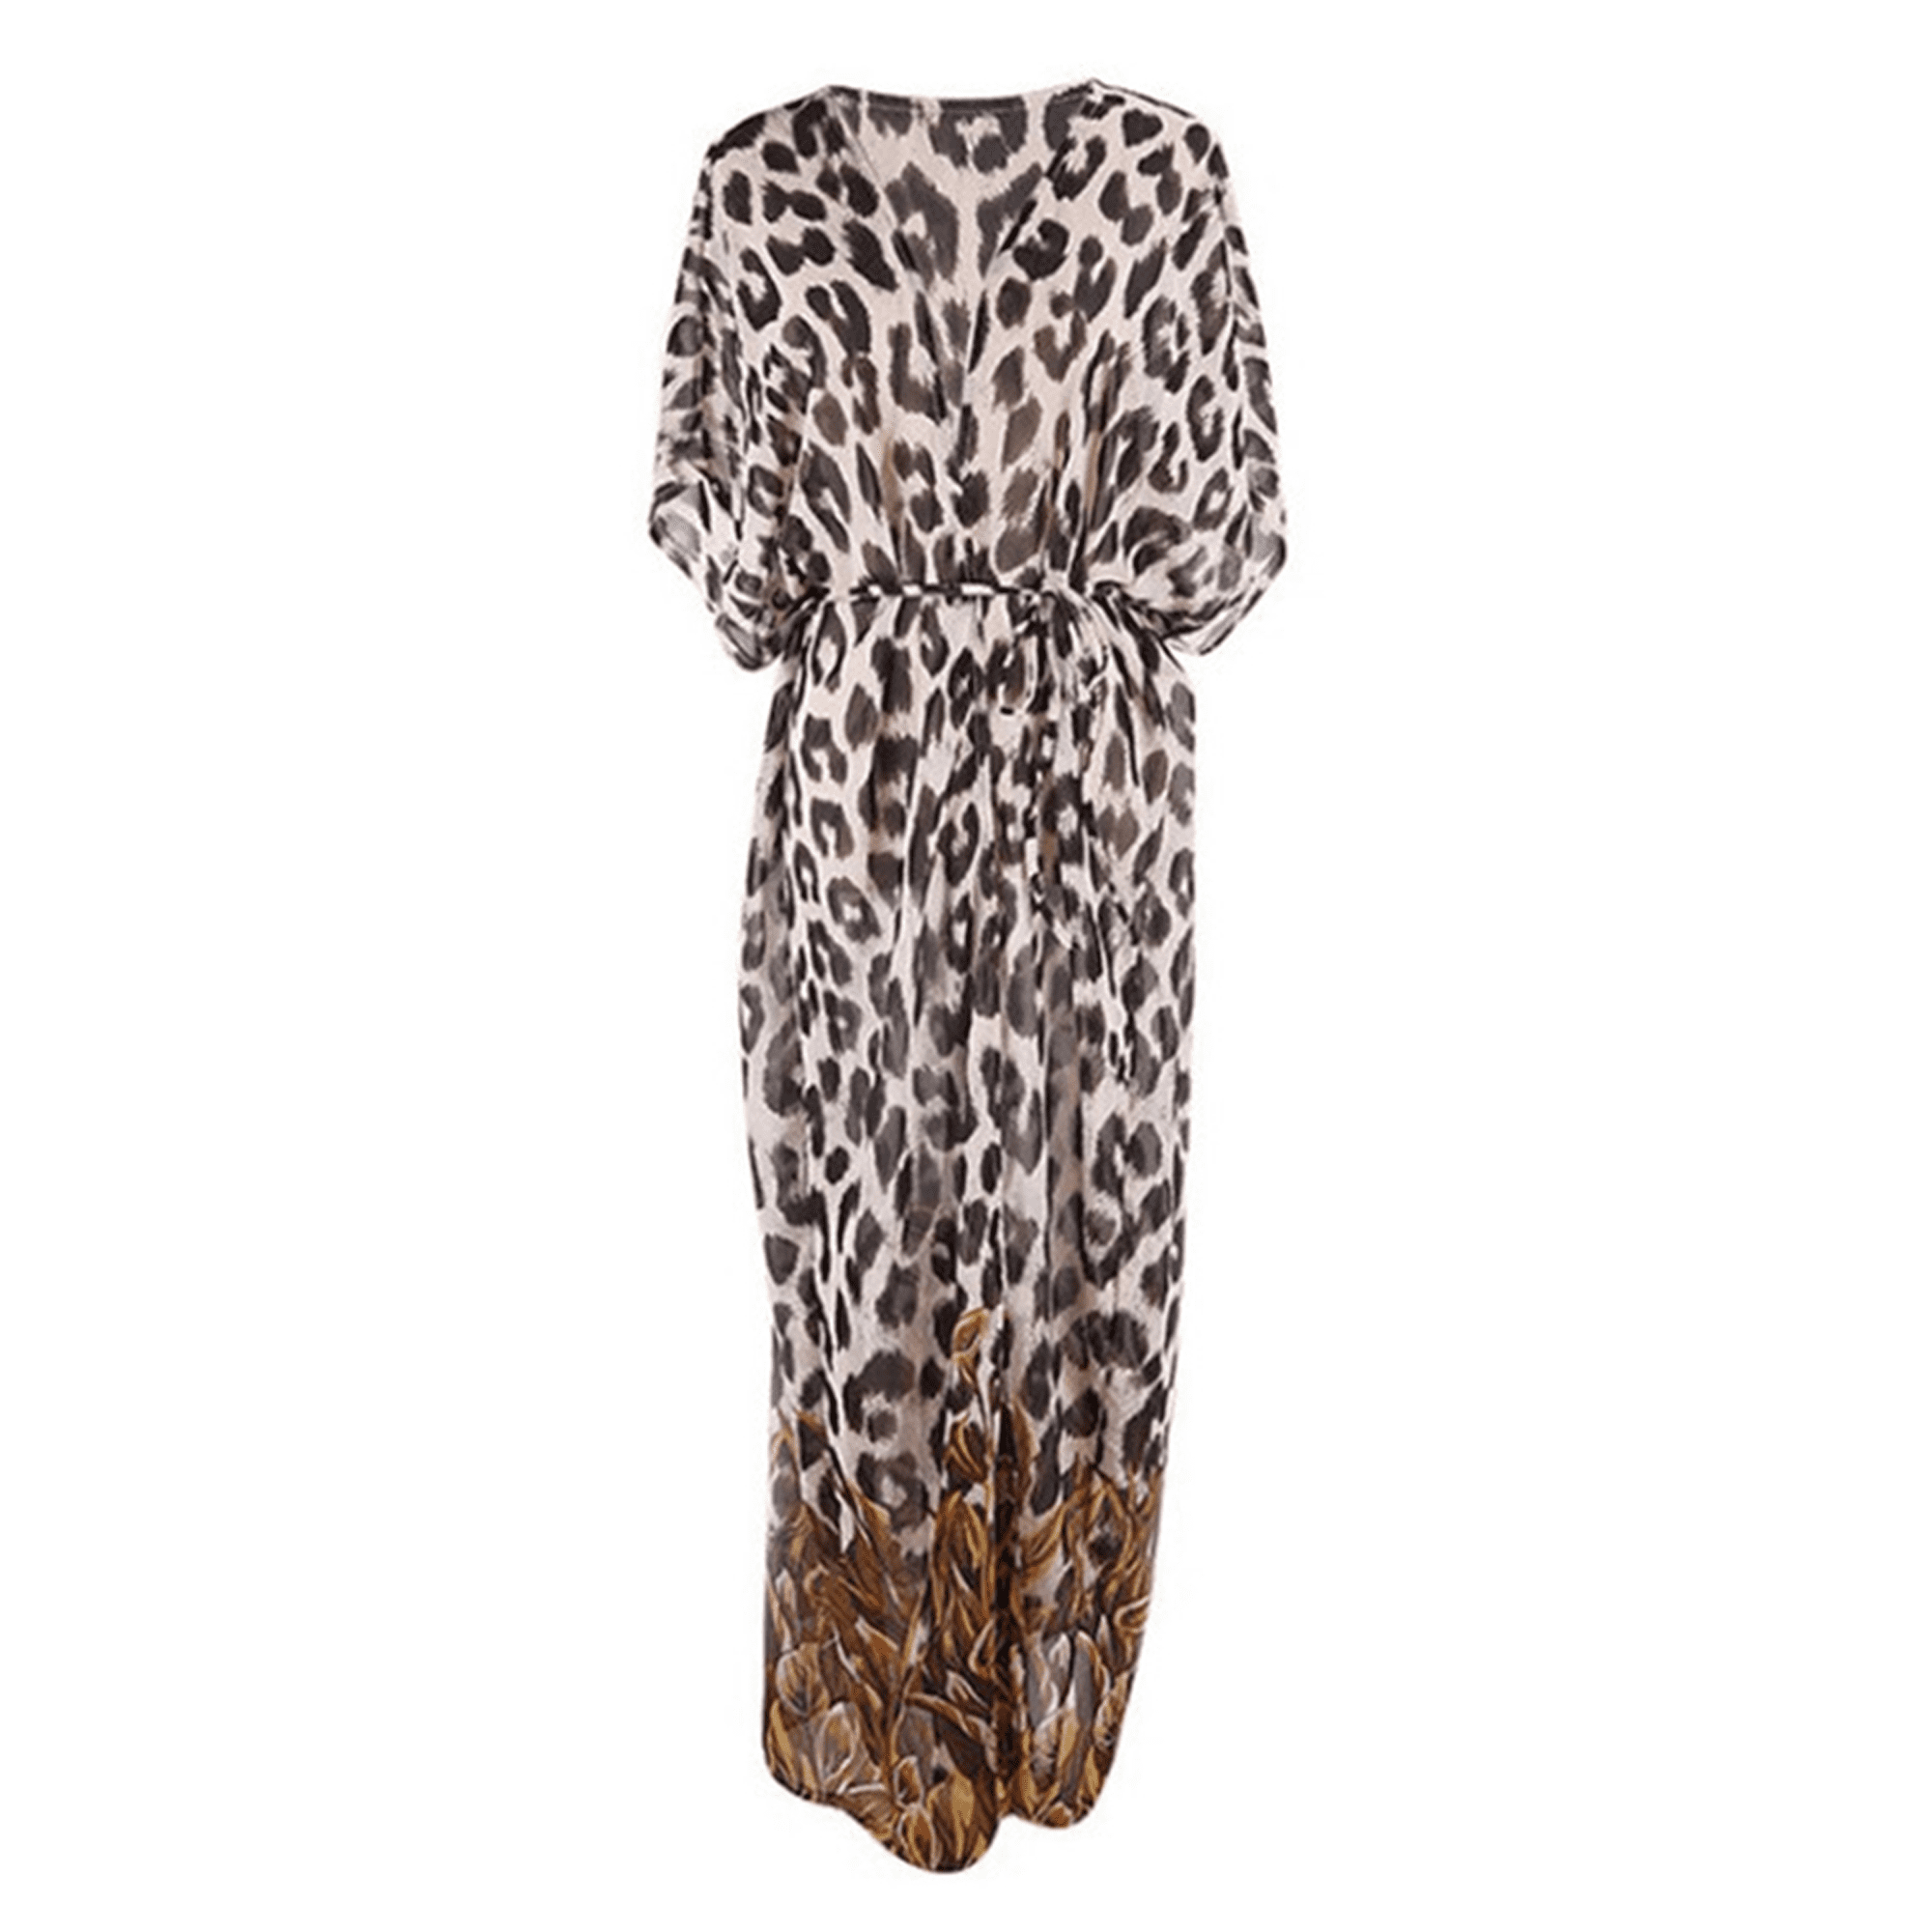 Bagilaanoe - Women Loose Leopard Print Cover-Up Bikini Beach Dress Long ...